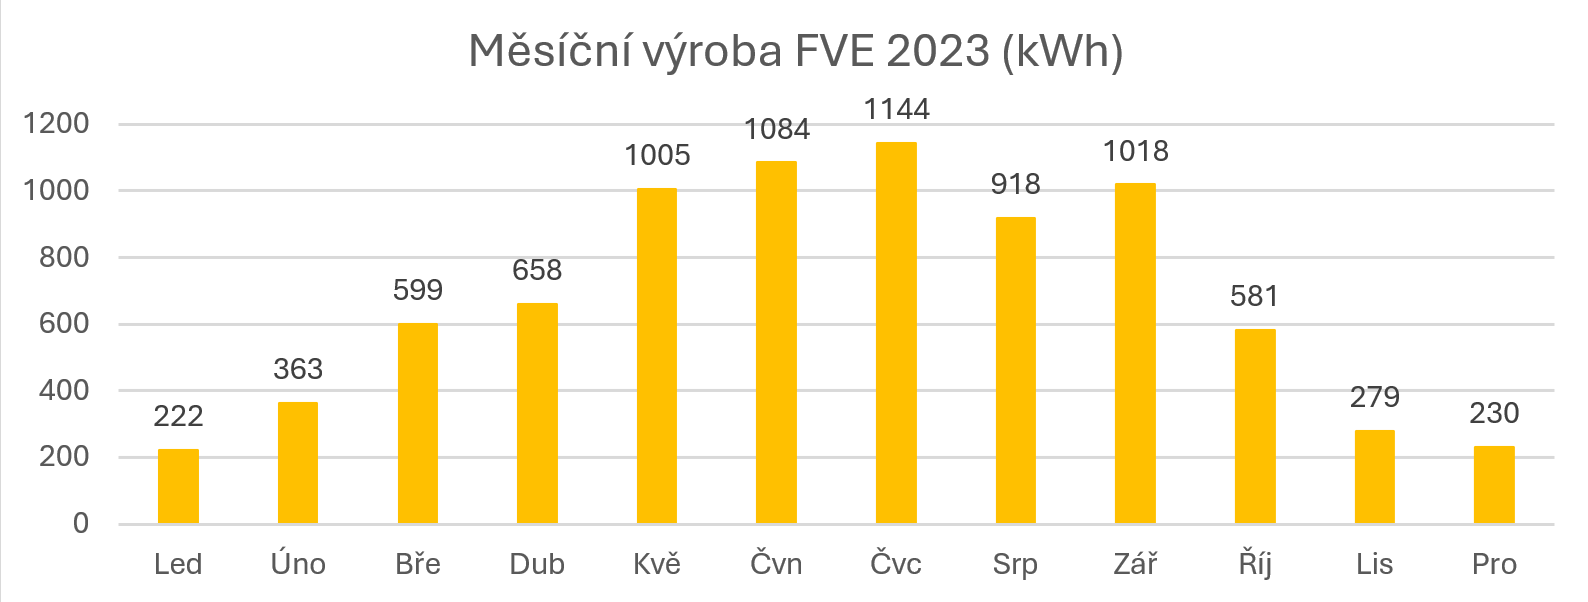 Měsíční výroba FVE 2023 (kWh)